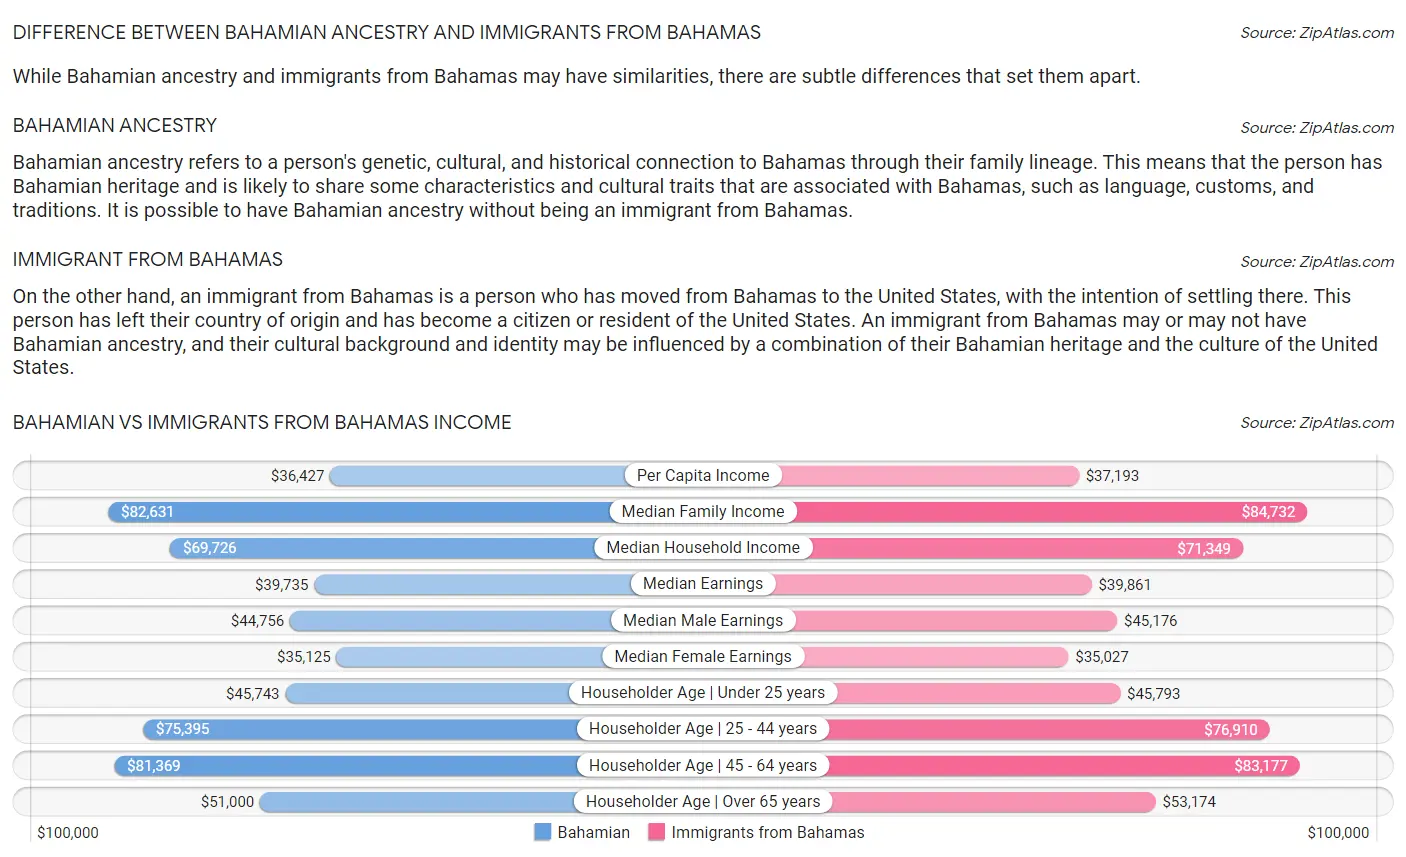 Bahamian vs Immigrants from Bahamas Income